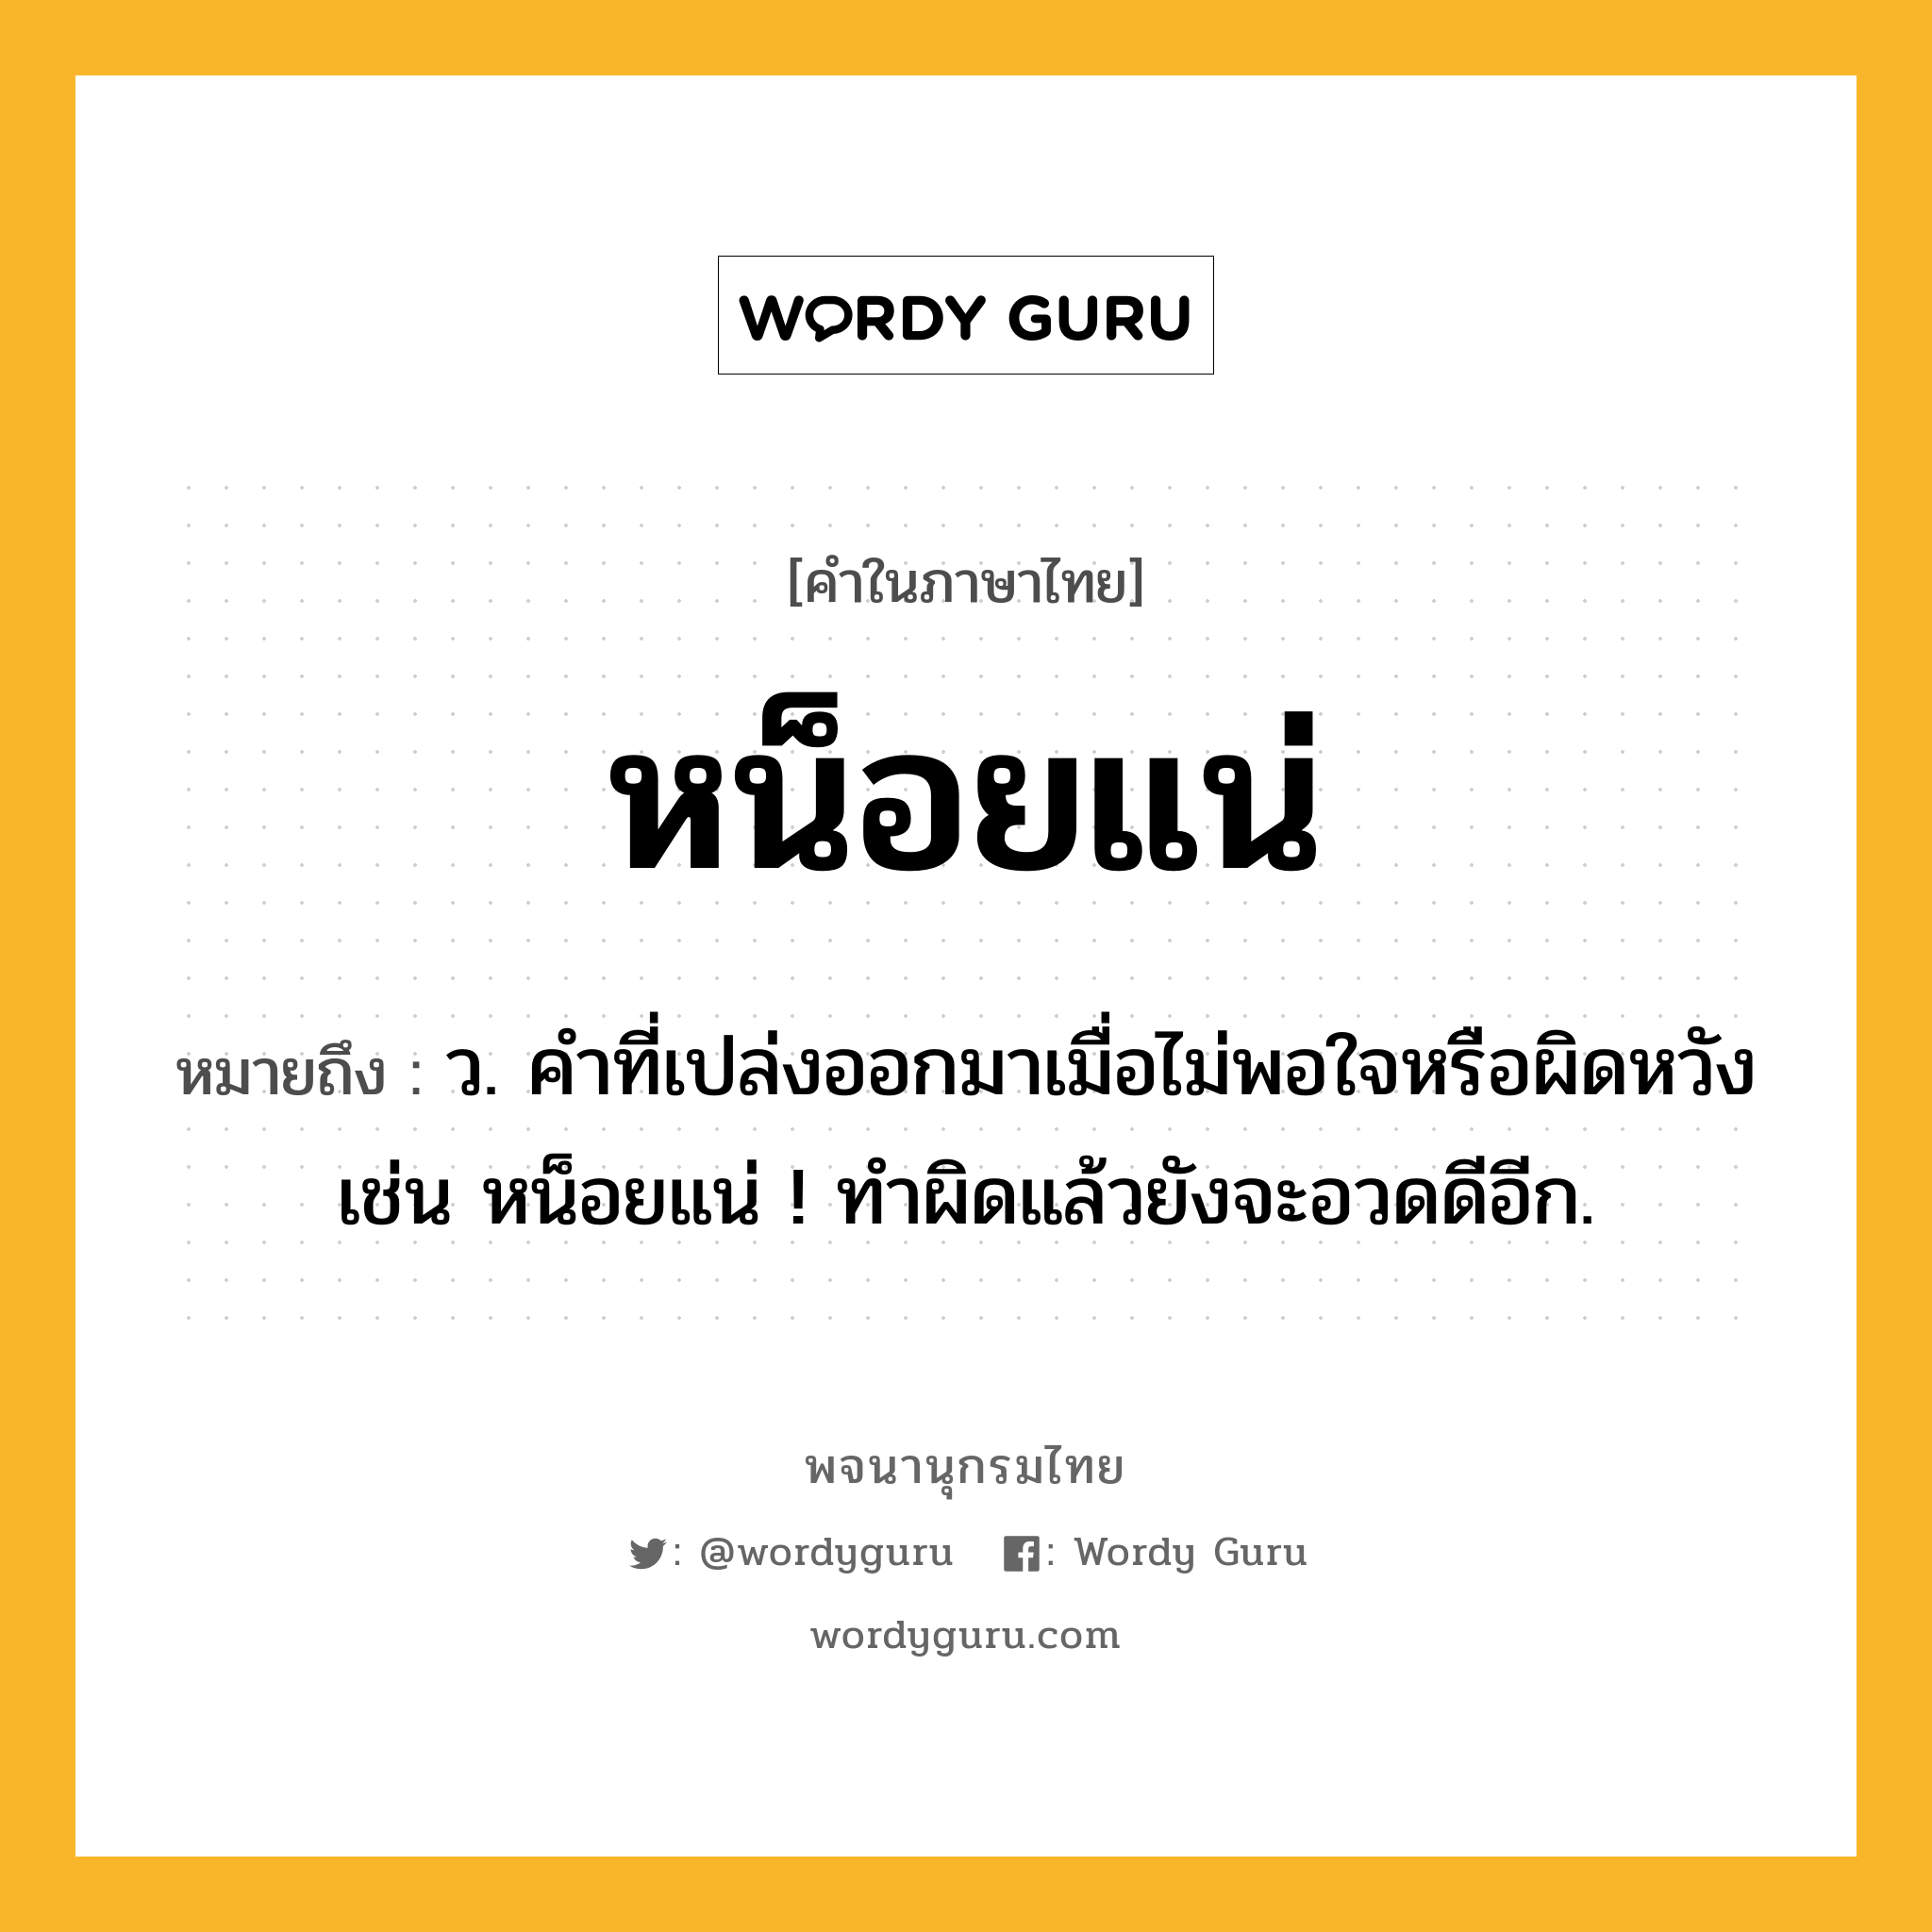 หน็อยแน่ หมายถึงอะไร?, คำในภาษาไทย หน็อยแน่ หมายถึง ว. คำที่เปล่งออกมาเมื่อไม่พอใจหรือผิดหวัง เช่น หน็อยแน่ ! ทําผิดแล้วยังจะอวดดีอีก.